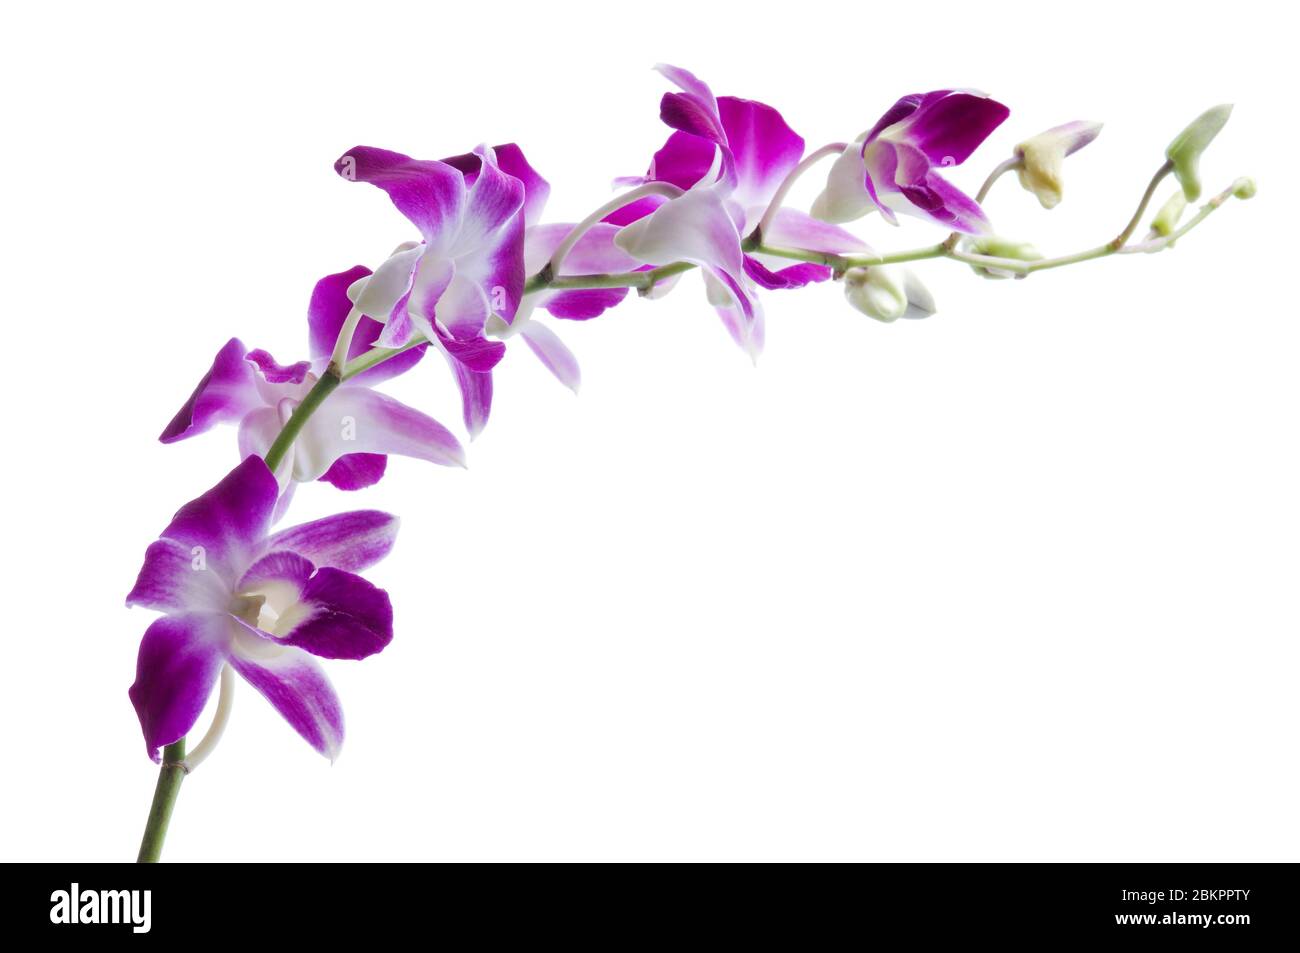 Beau bouquet de fleurs d'orchidées violettes. Bouquet d'orchidées tropicales de luxe magenta - dendrobium - isolé sur fond blanc. Prise de vue en studio. Banque D'Images